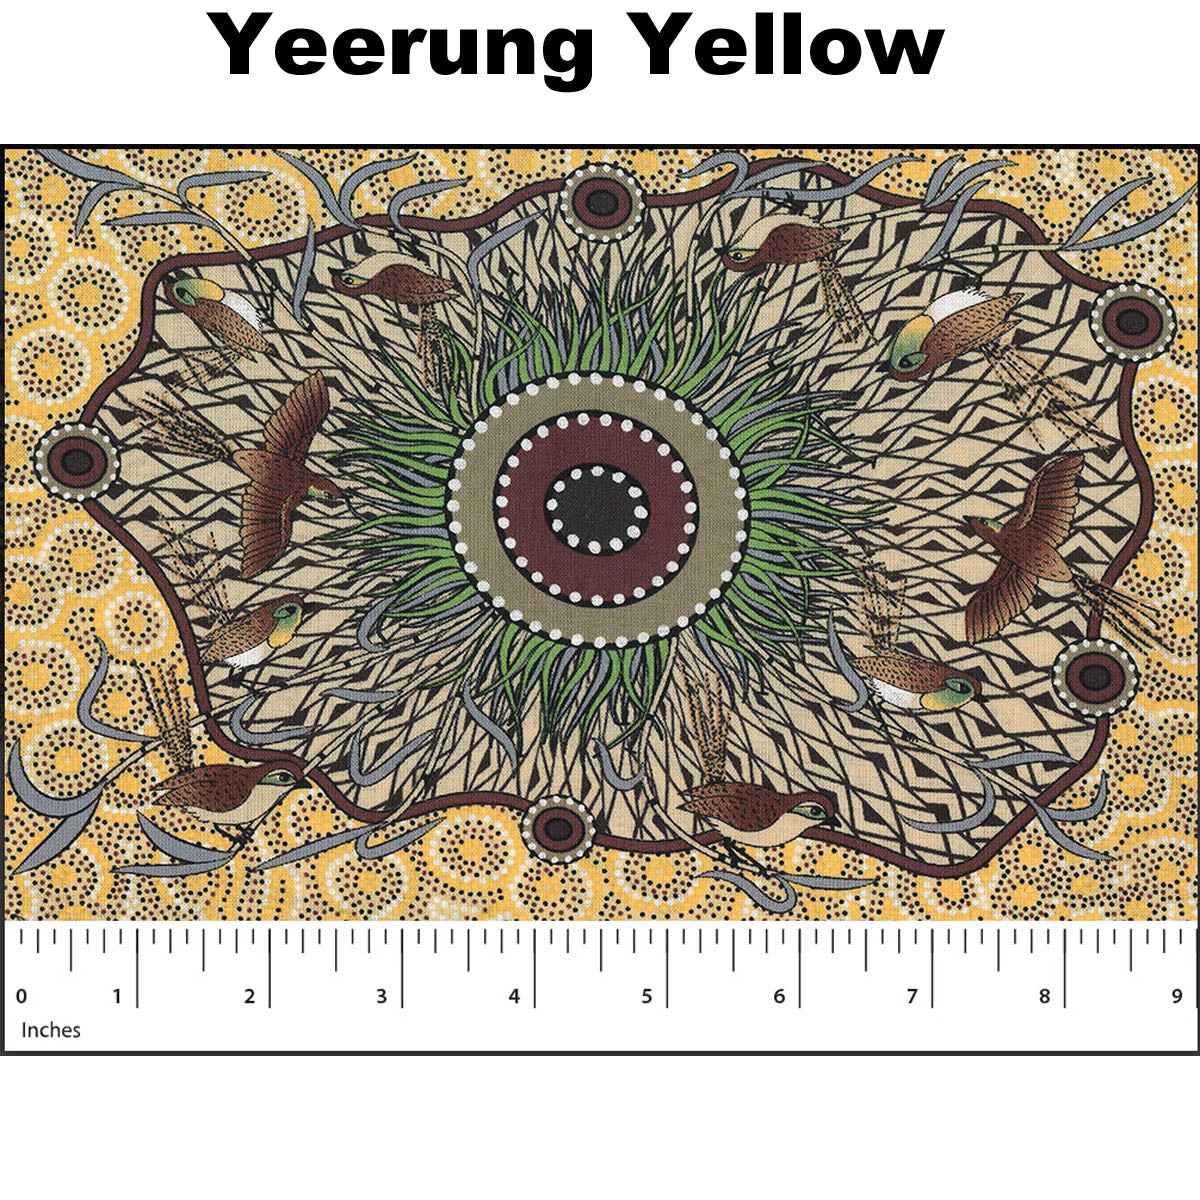 YEERUNG YELLOW by Australian Aboriginal Artist Nambooka